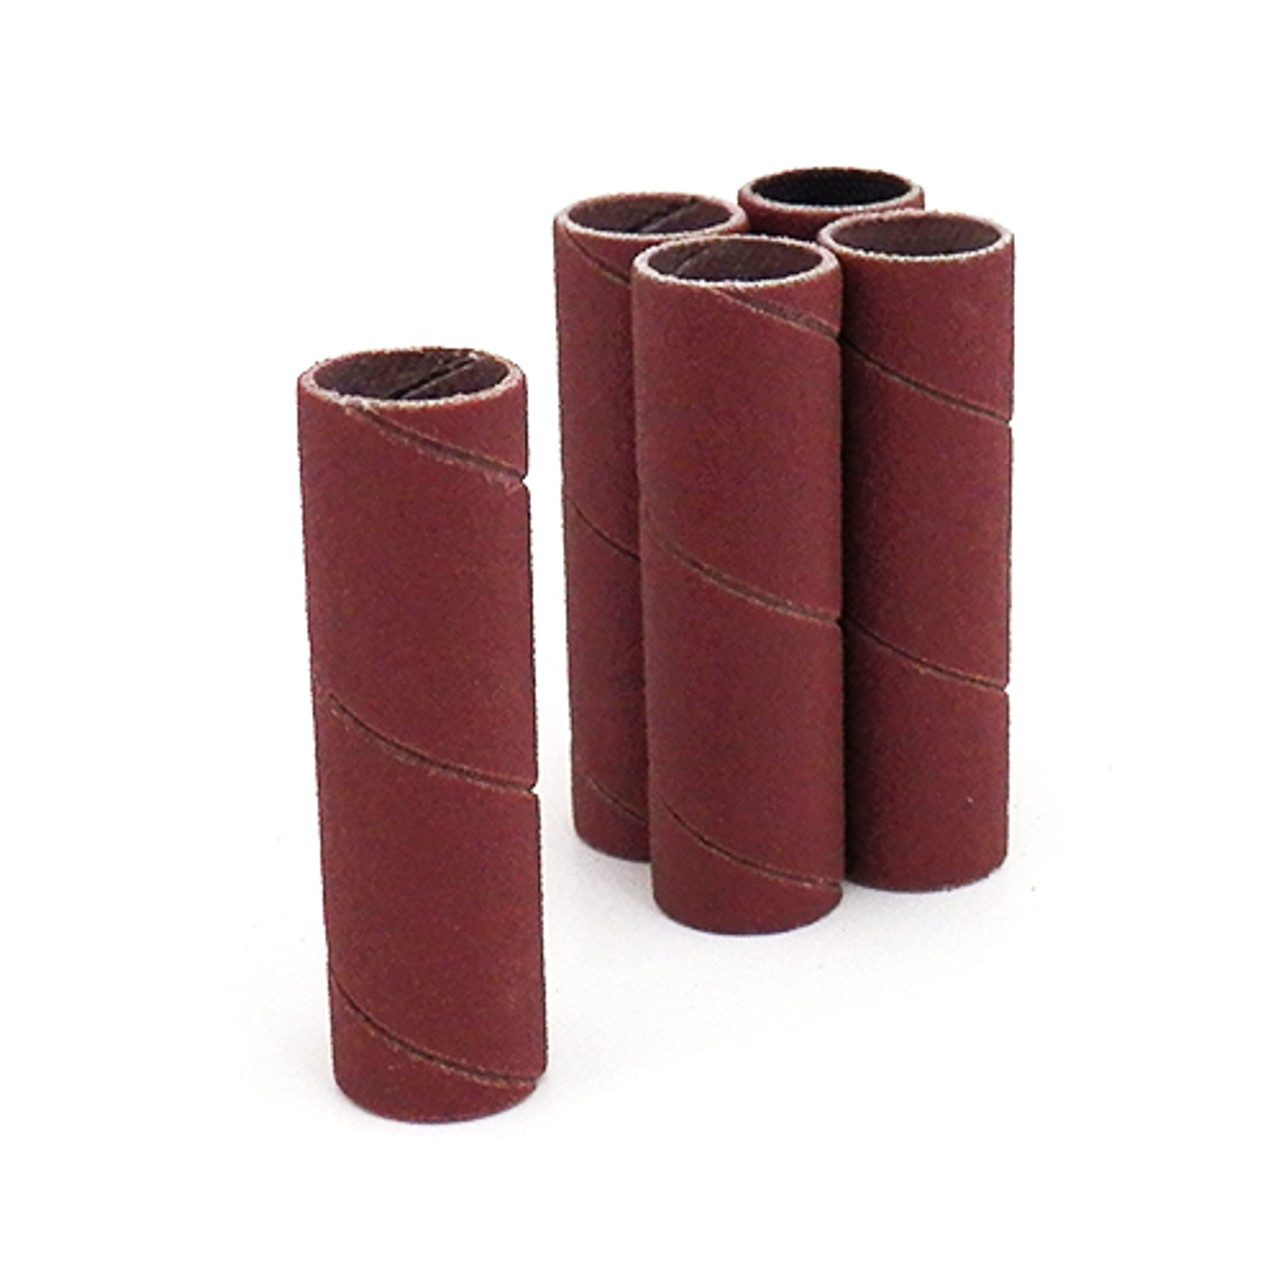 Klingspor Abrasives Aluminum Oxide Sanding Sleeves, 1/2"x 2" 100 Grit, 5pk